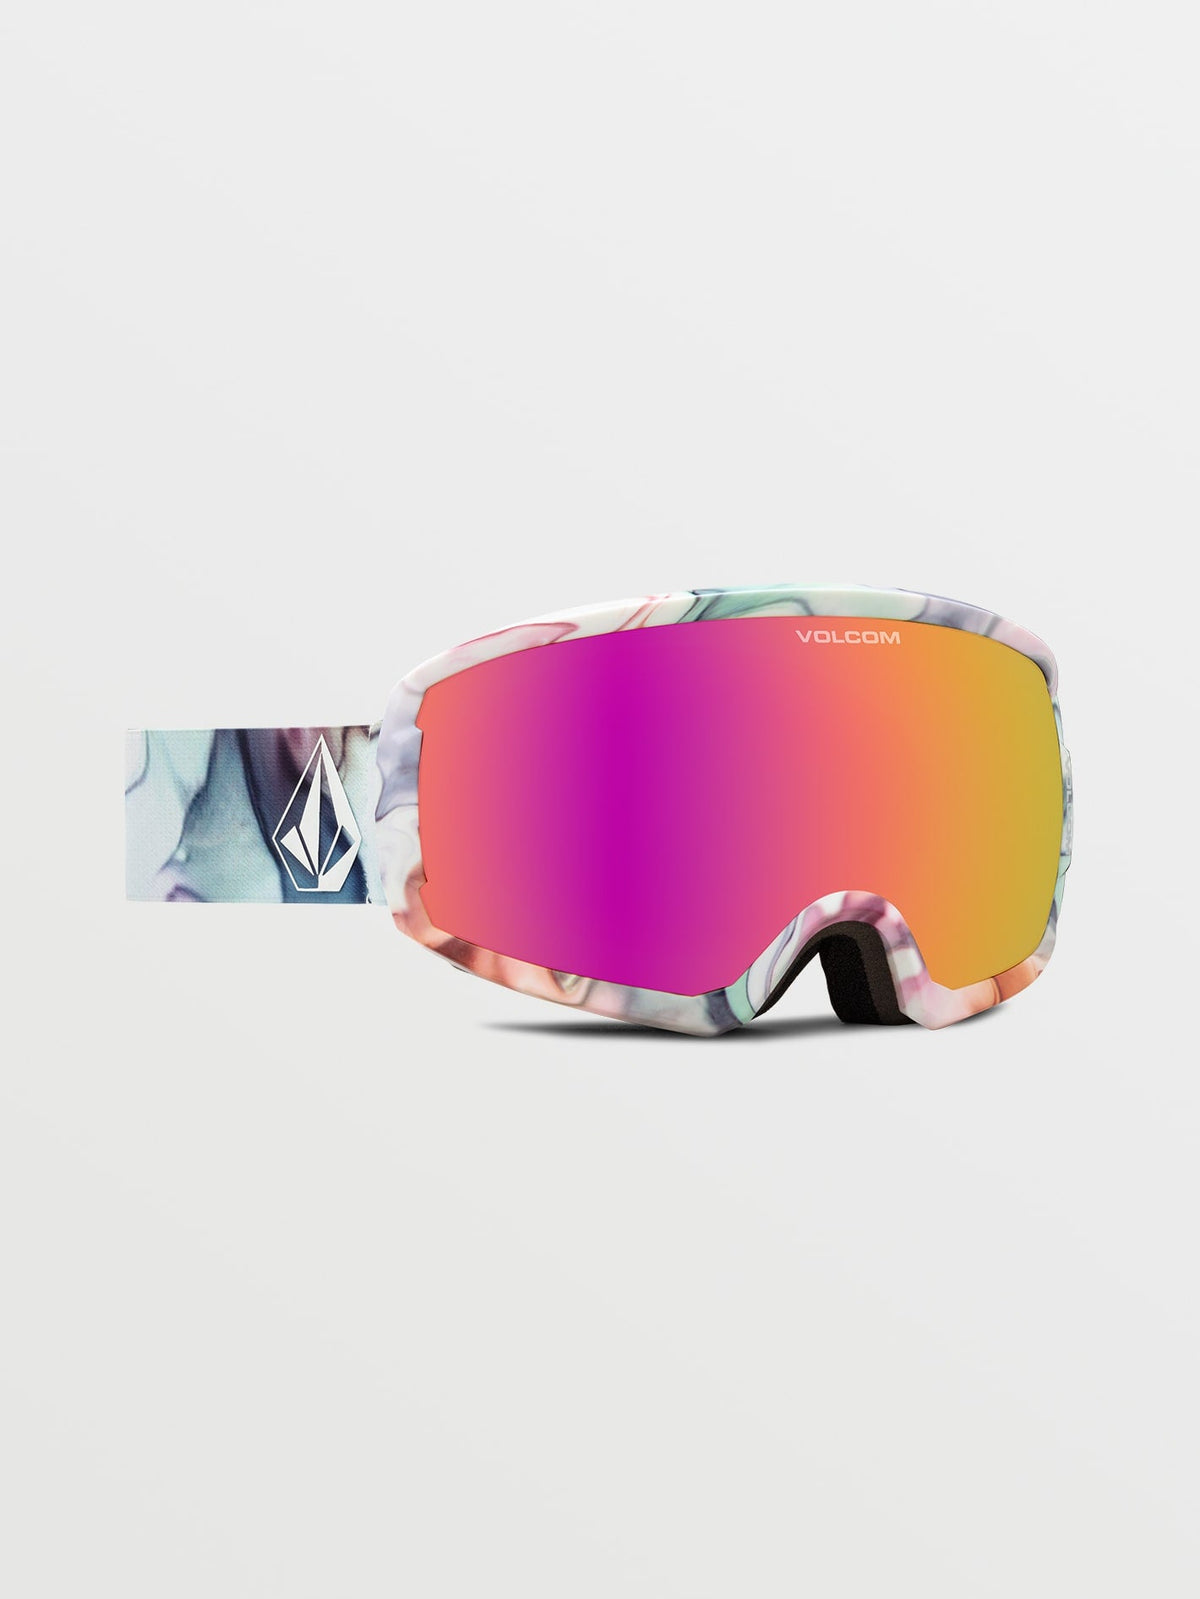 Volcom Migrations Goggle with Bonus Lens Nebula/pink Chrome